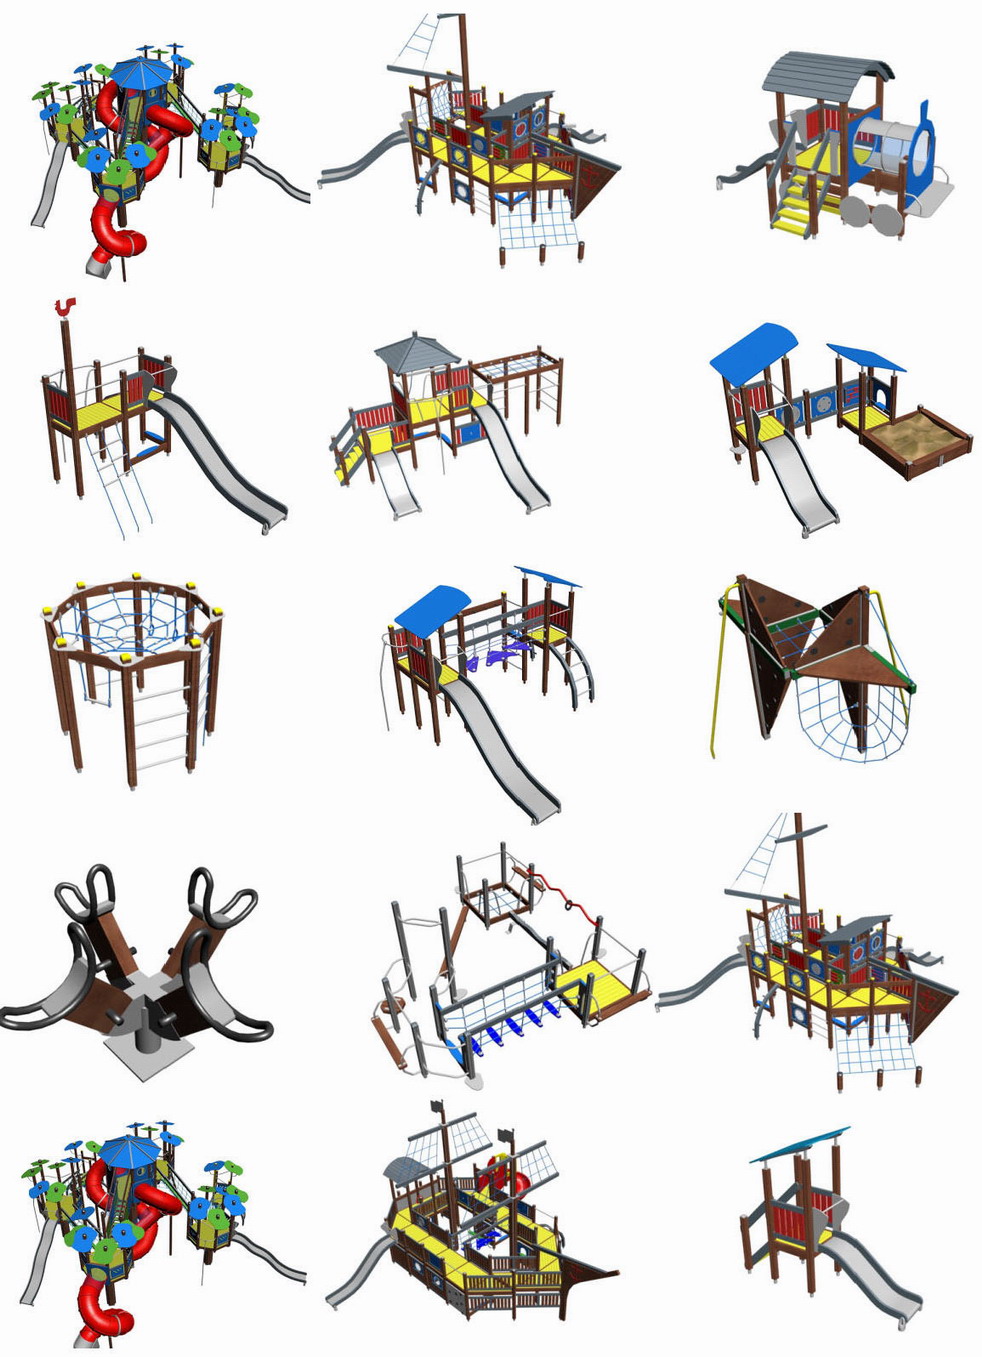 مجموعة من اروع بلوكات ملاعب الاطفال بصيغة ثري دي ماكس كاملة مع ال Maps الصور بالداخل - المجموعة 1 Playground